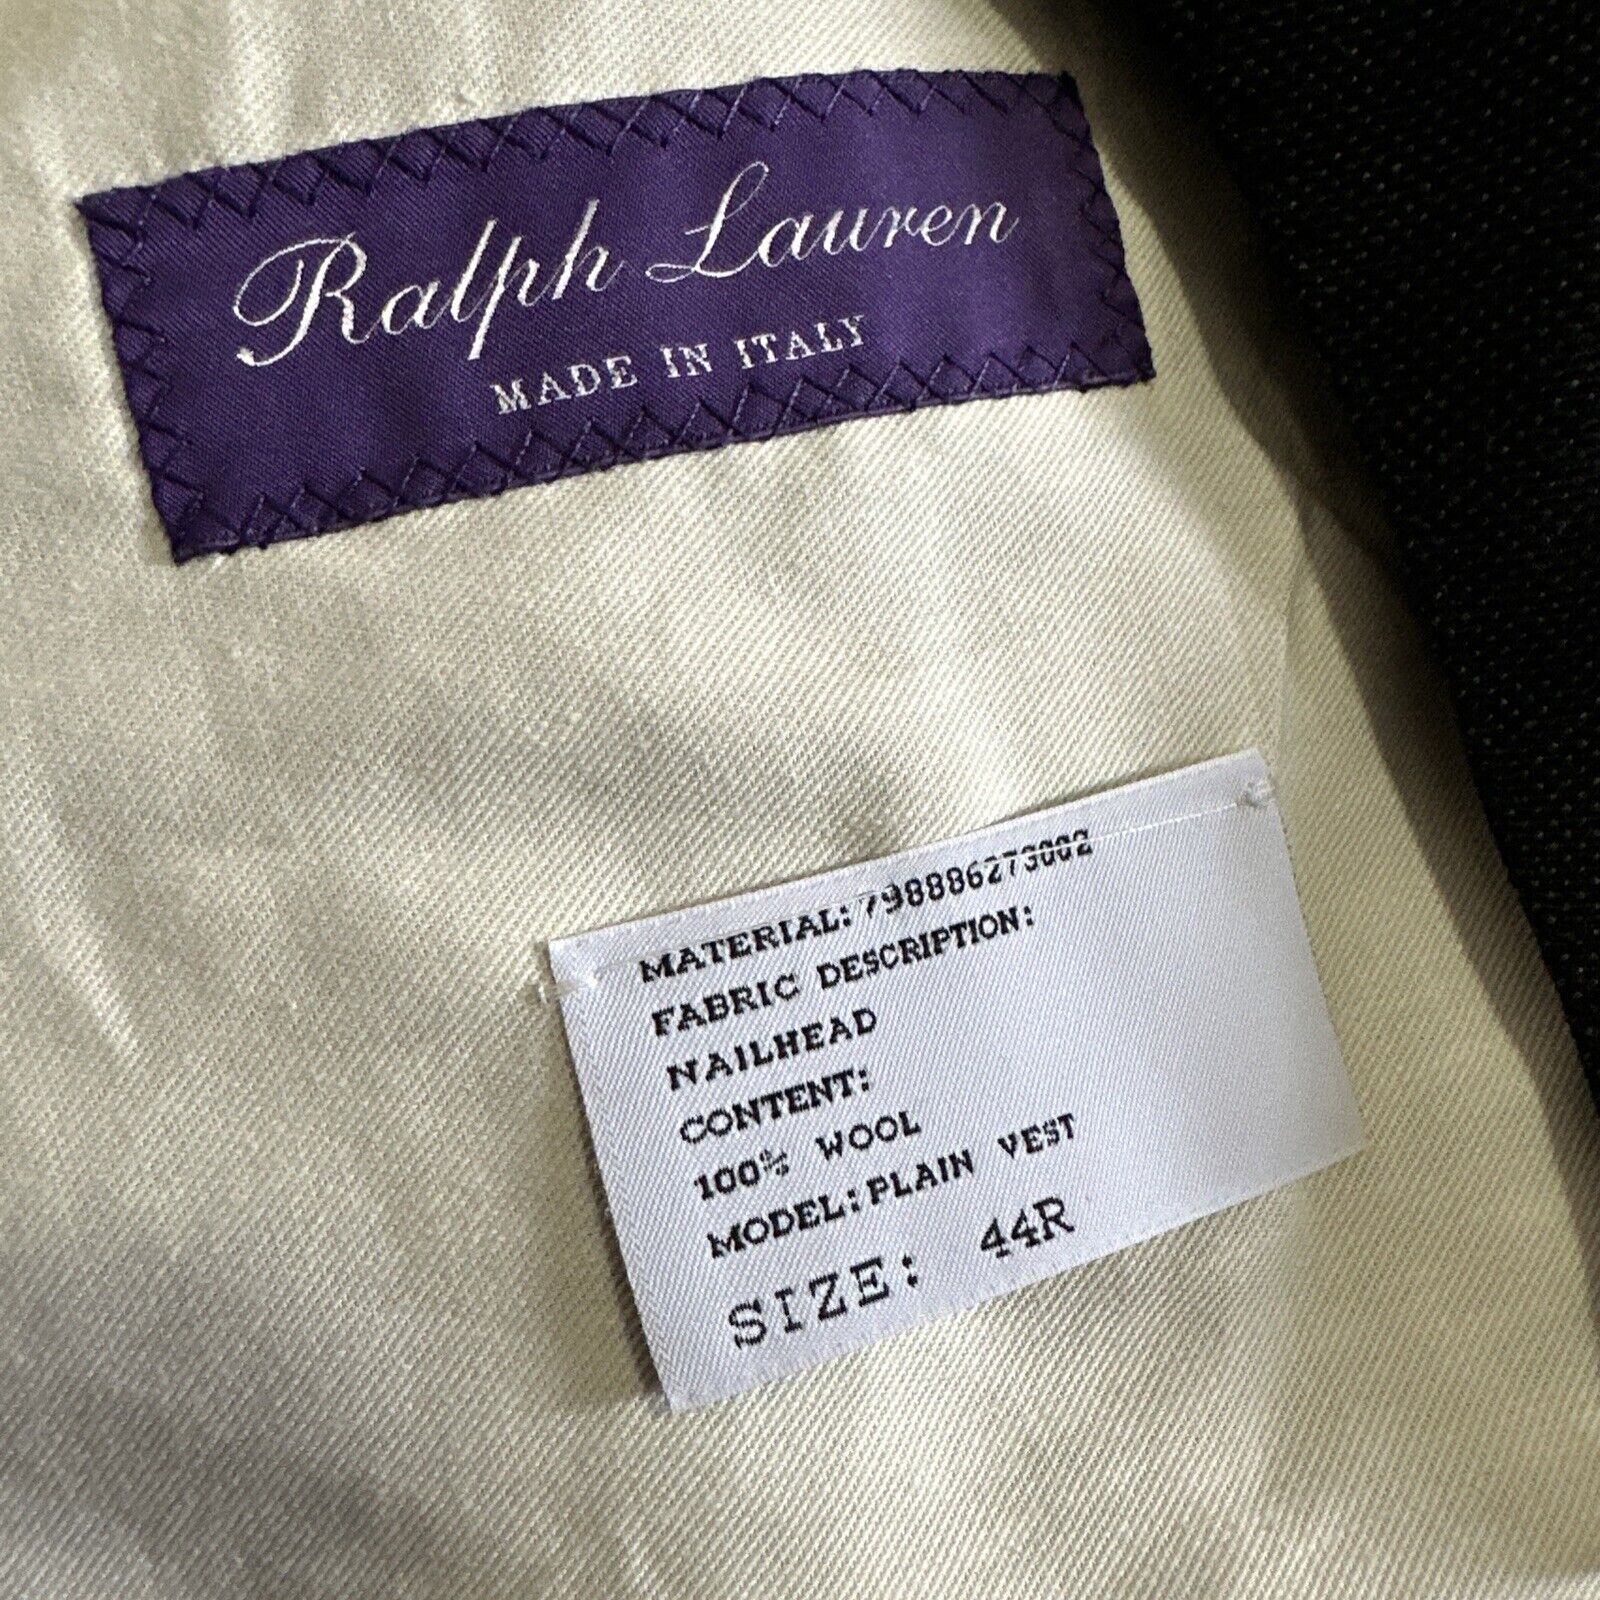 New $995 Ralph Lauren Purple Label Men Vest DK Gray 44R US/54R Eu Italy